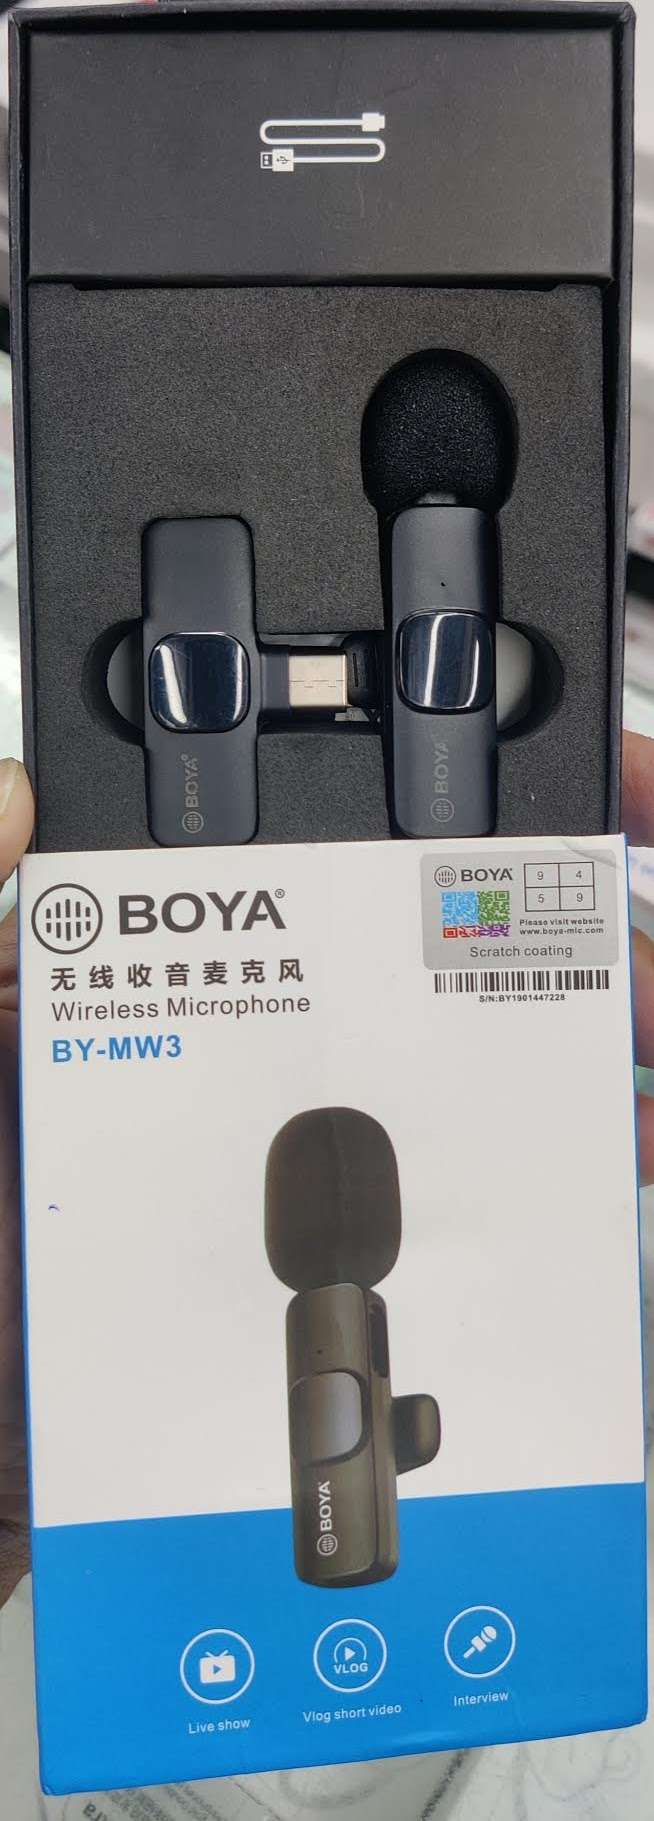 BOYA BY-MW3 Wireless Microphone single receiver